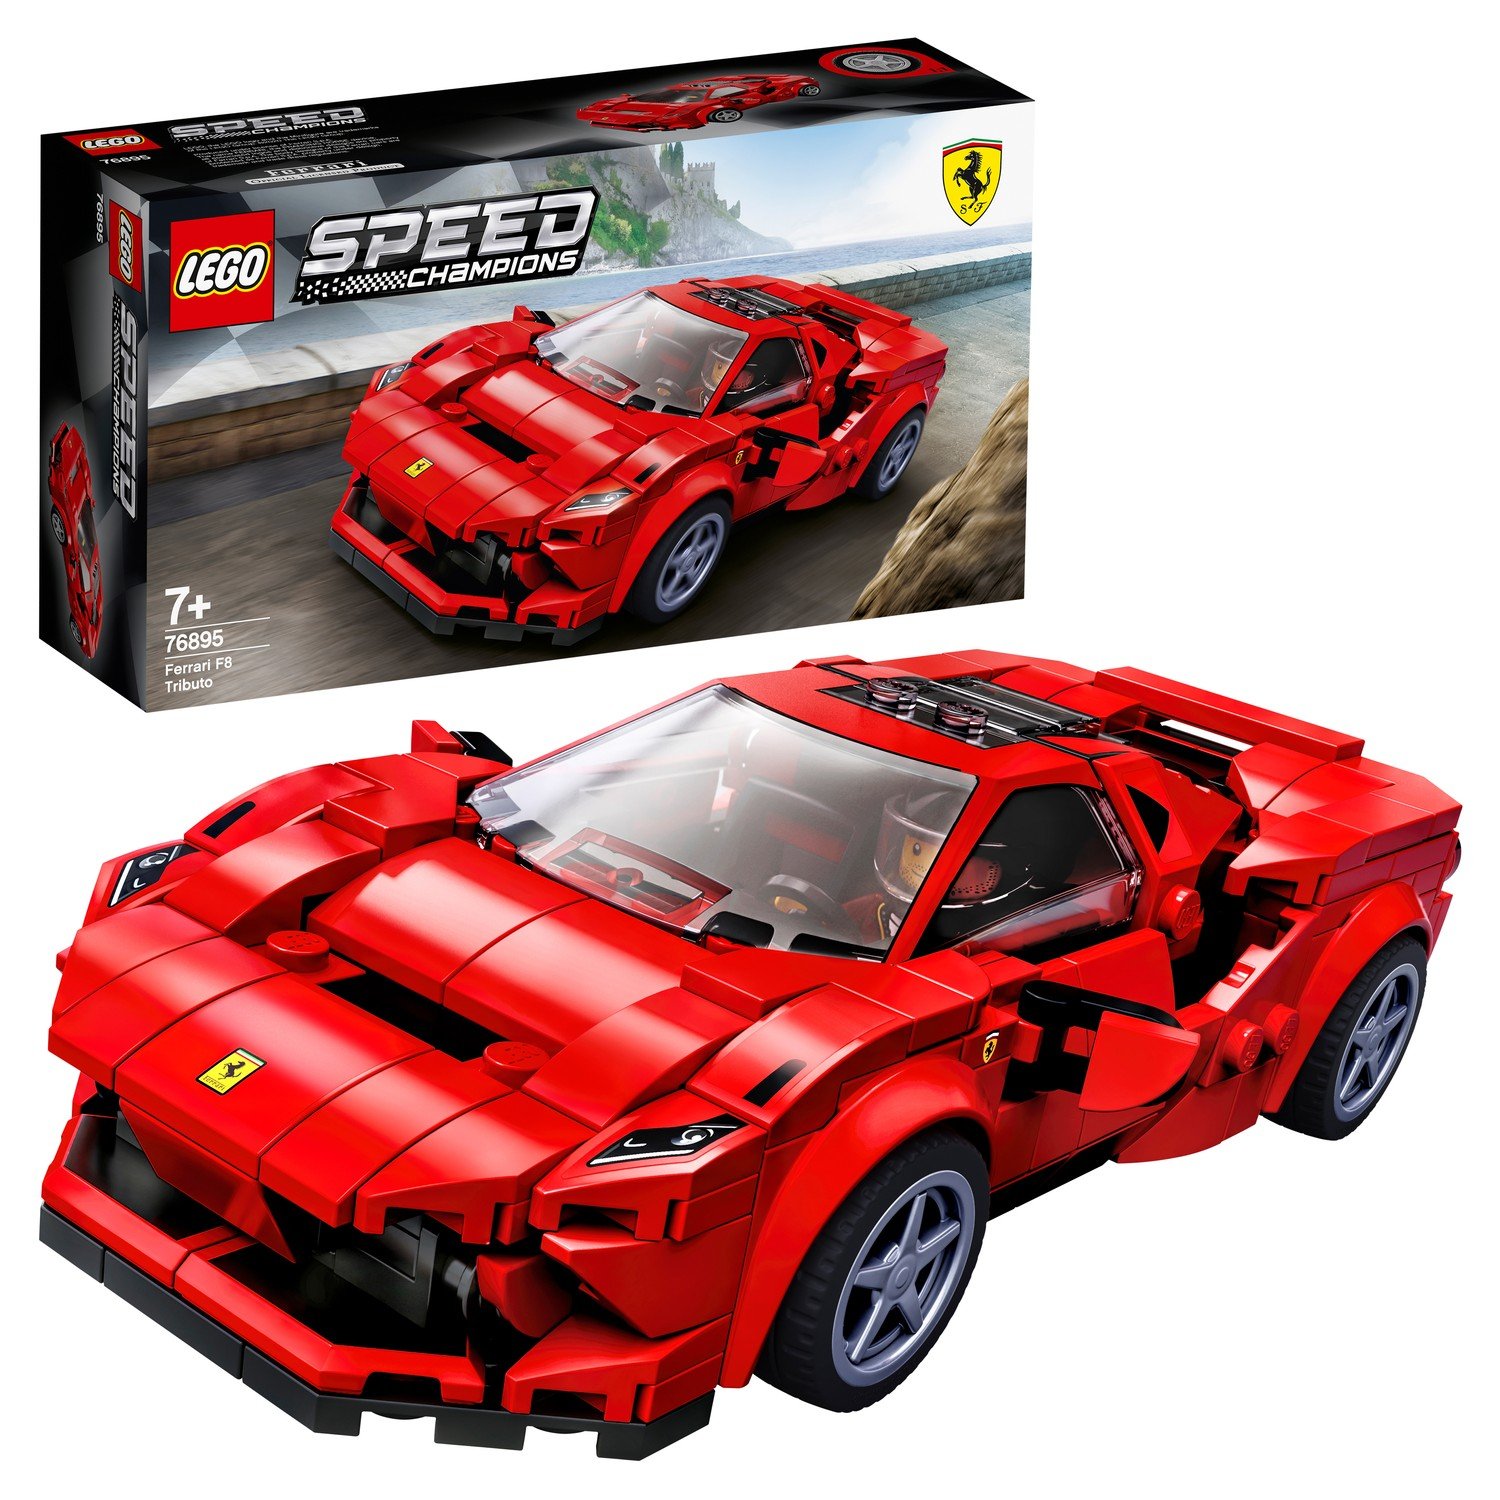 Конструктор Speed Champions 76895 Ferrari F8 Tributo